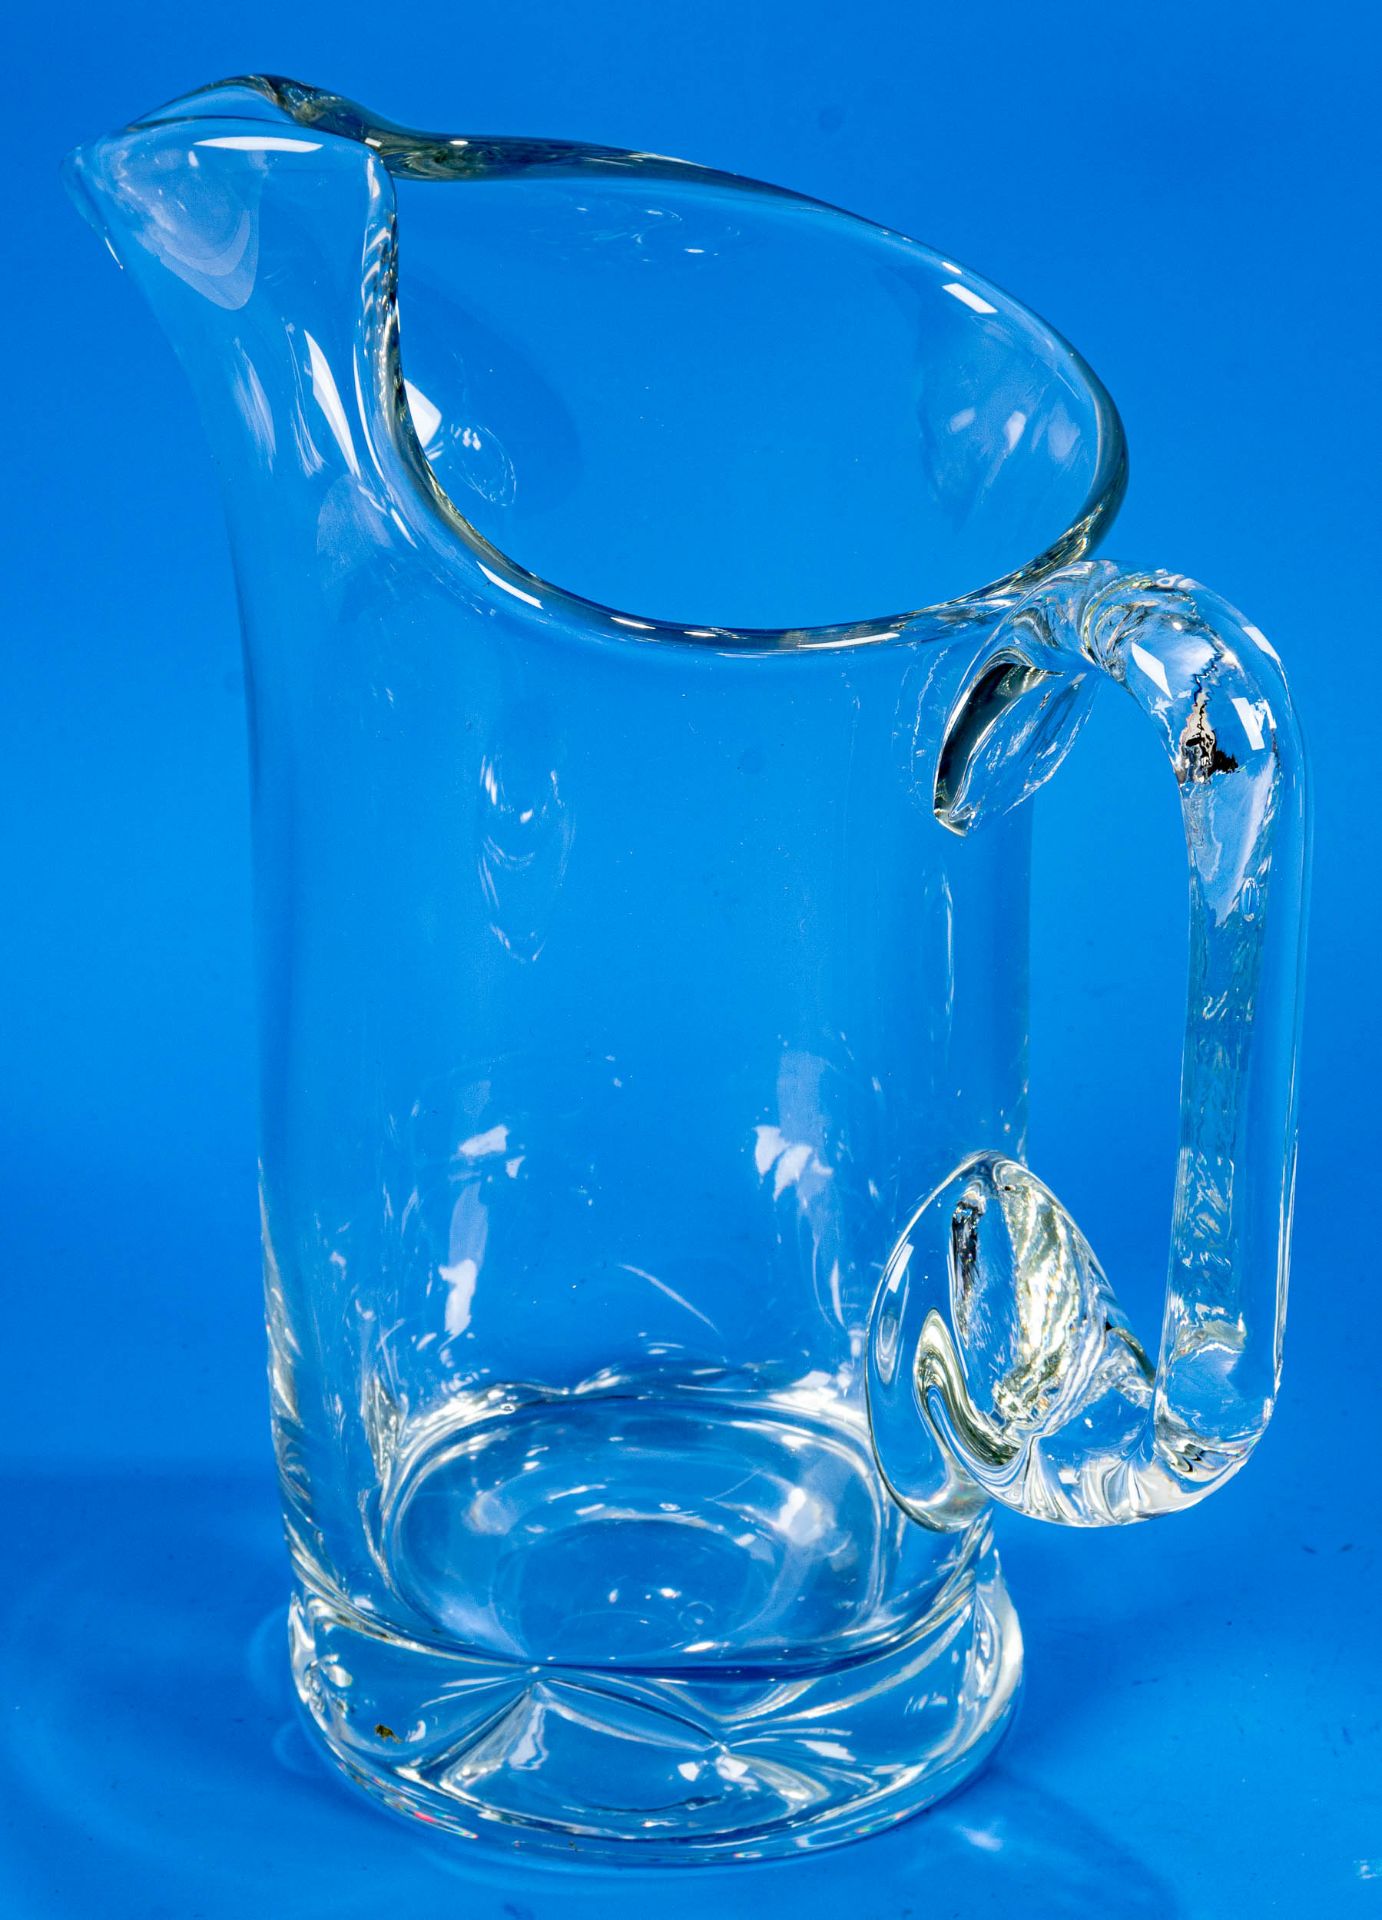 3teiliges Konvolut versch. Saftkrüge/Wasserkrüge. Farblose Glaskörper mit seitlichem Griff, teilwei - Image 6 of 9